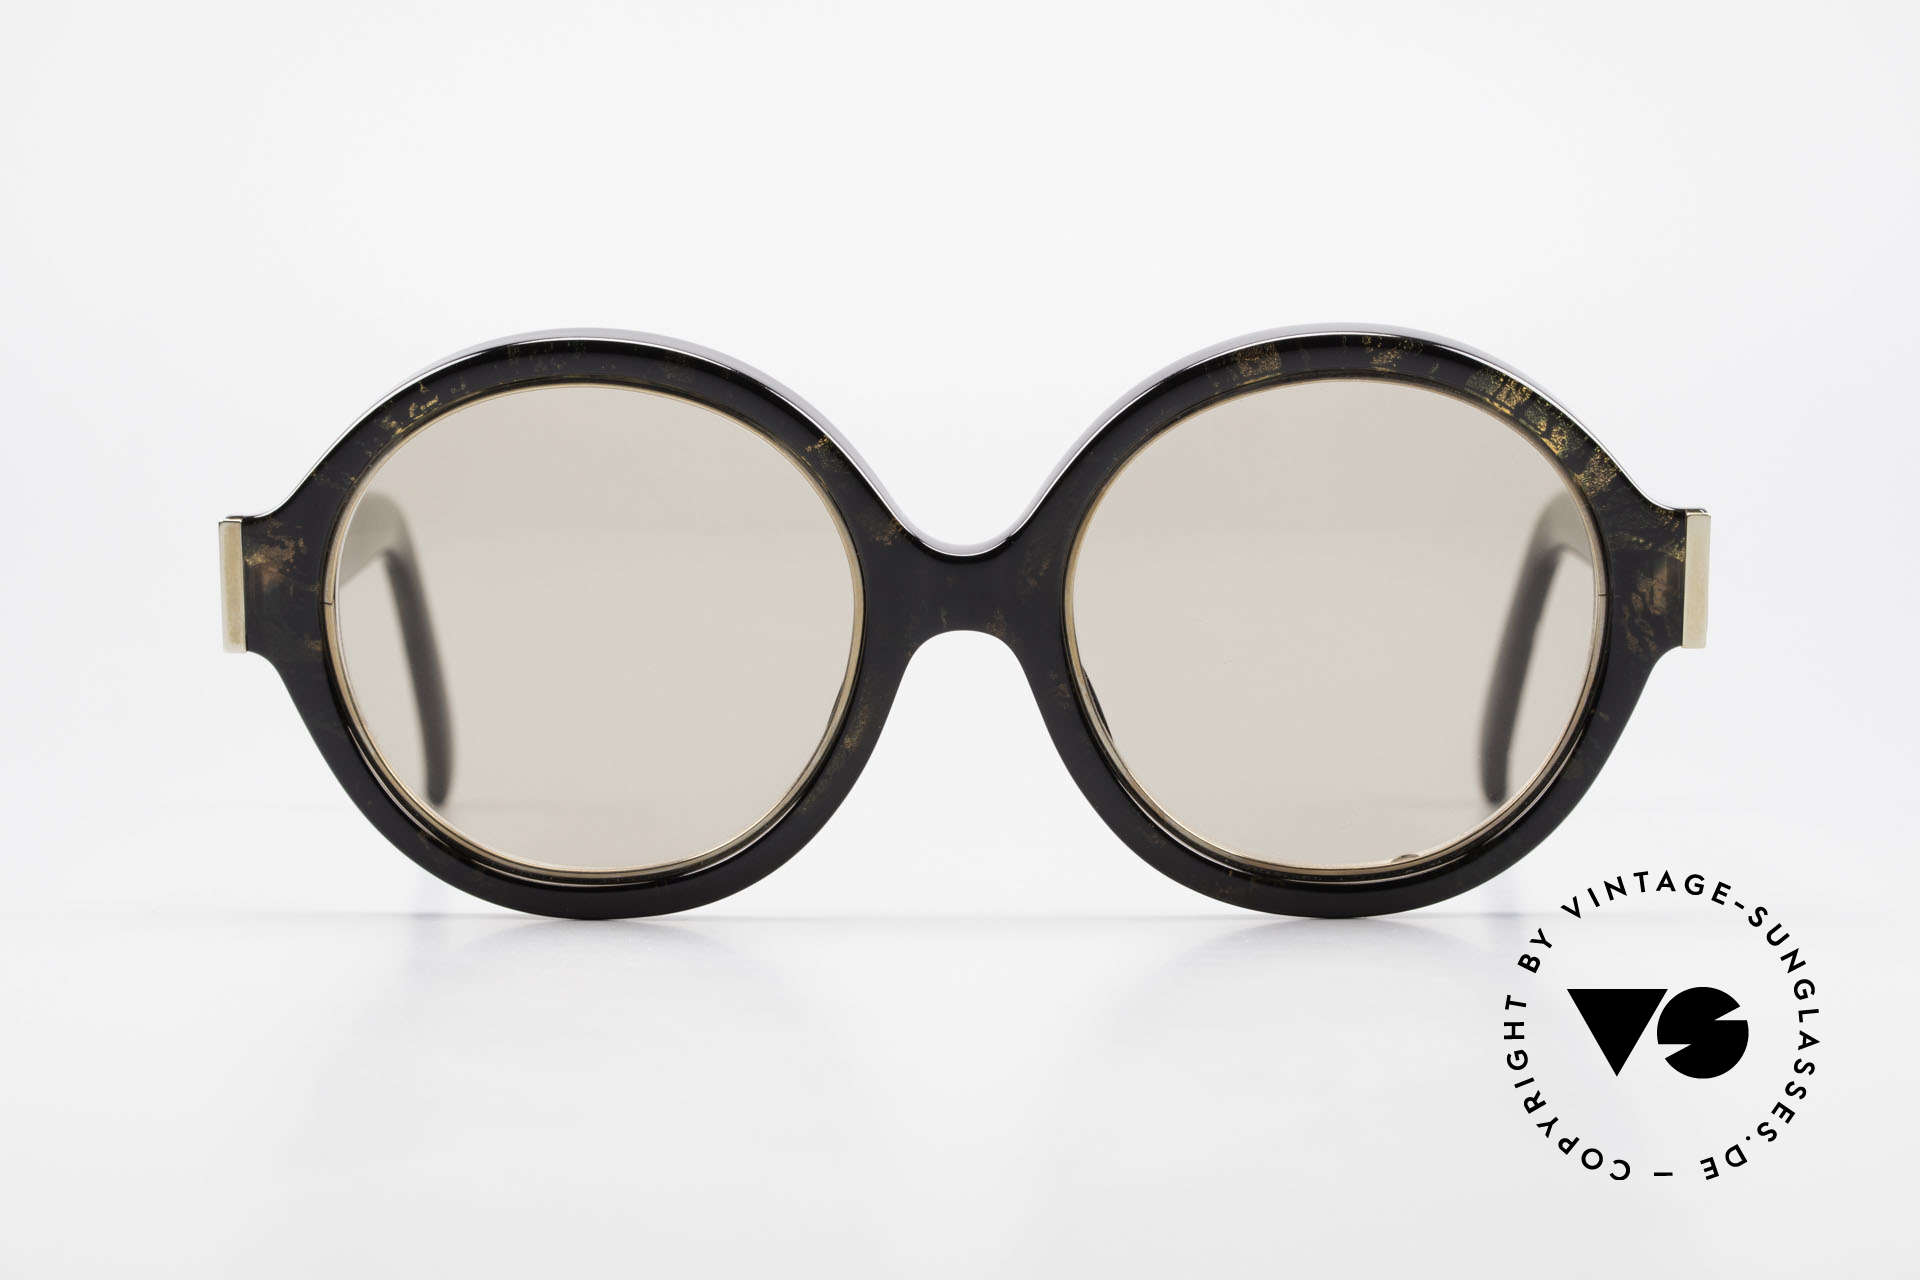 Christian Dior 2446 Runde Damen Sonnenbrille 80er, zauberhafte Farben und Muster dank Optyl-Material, Passend für Damen